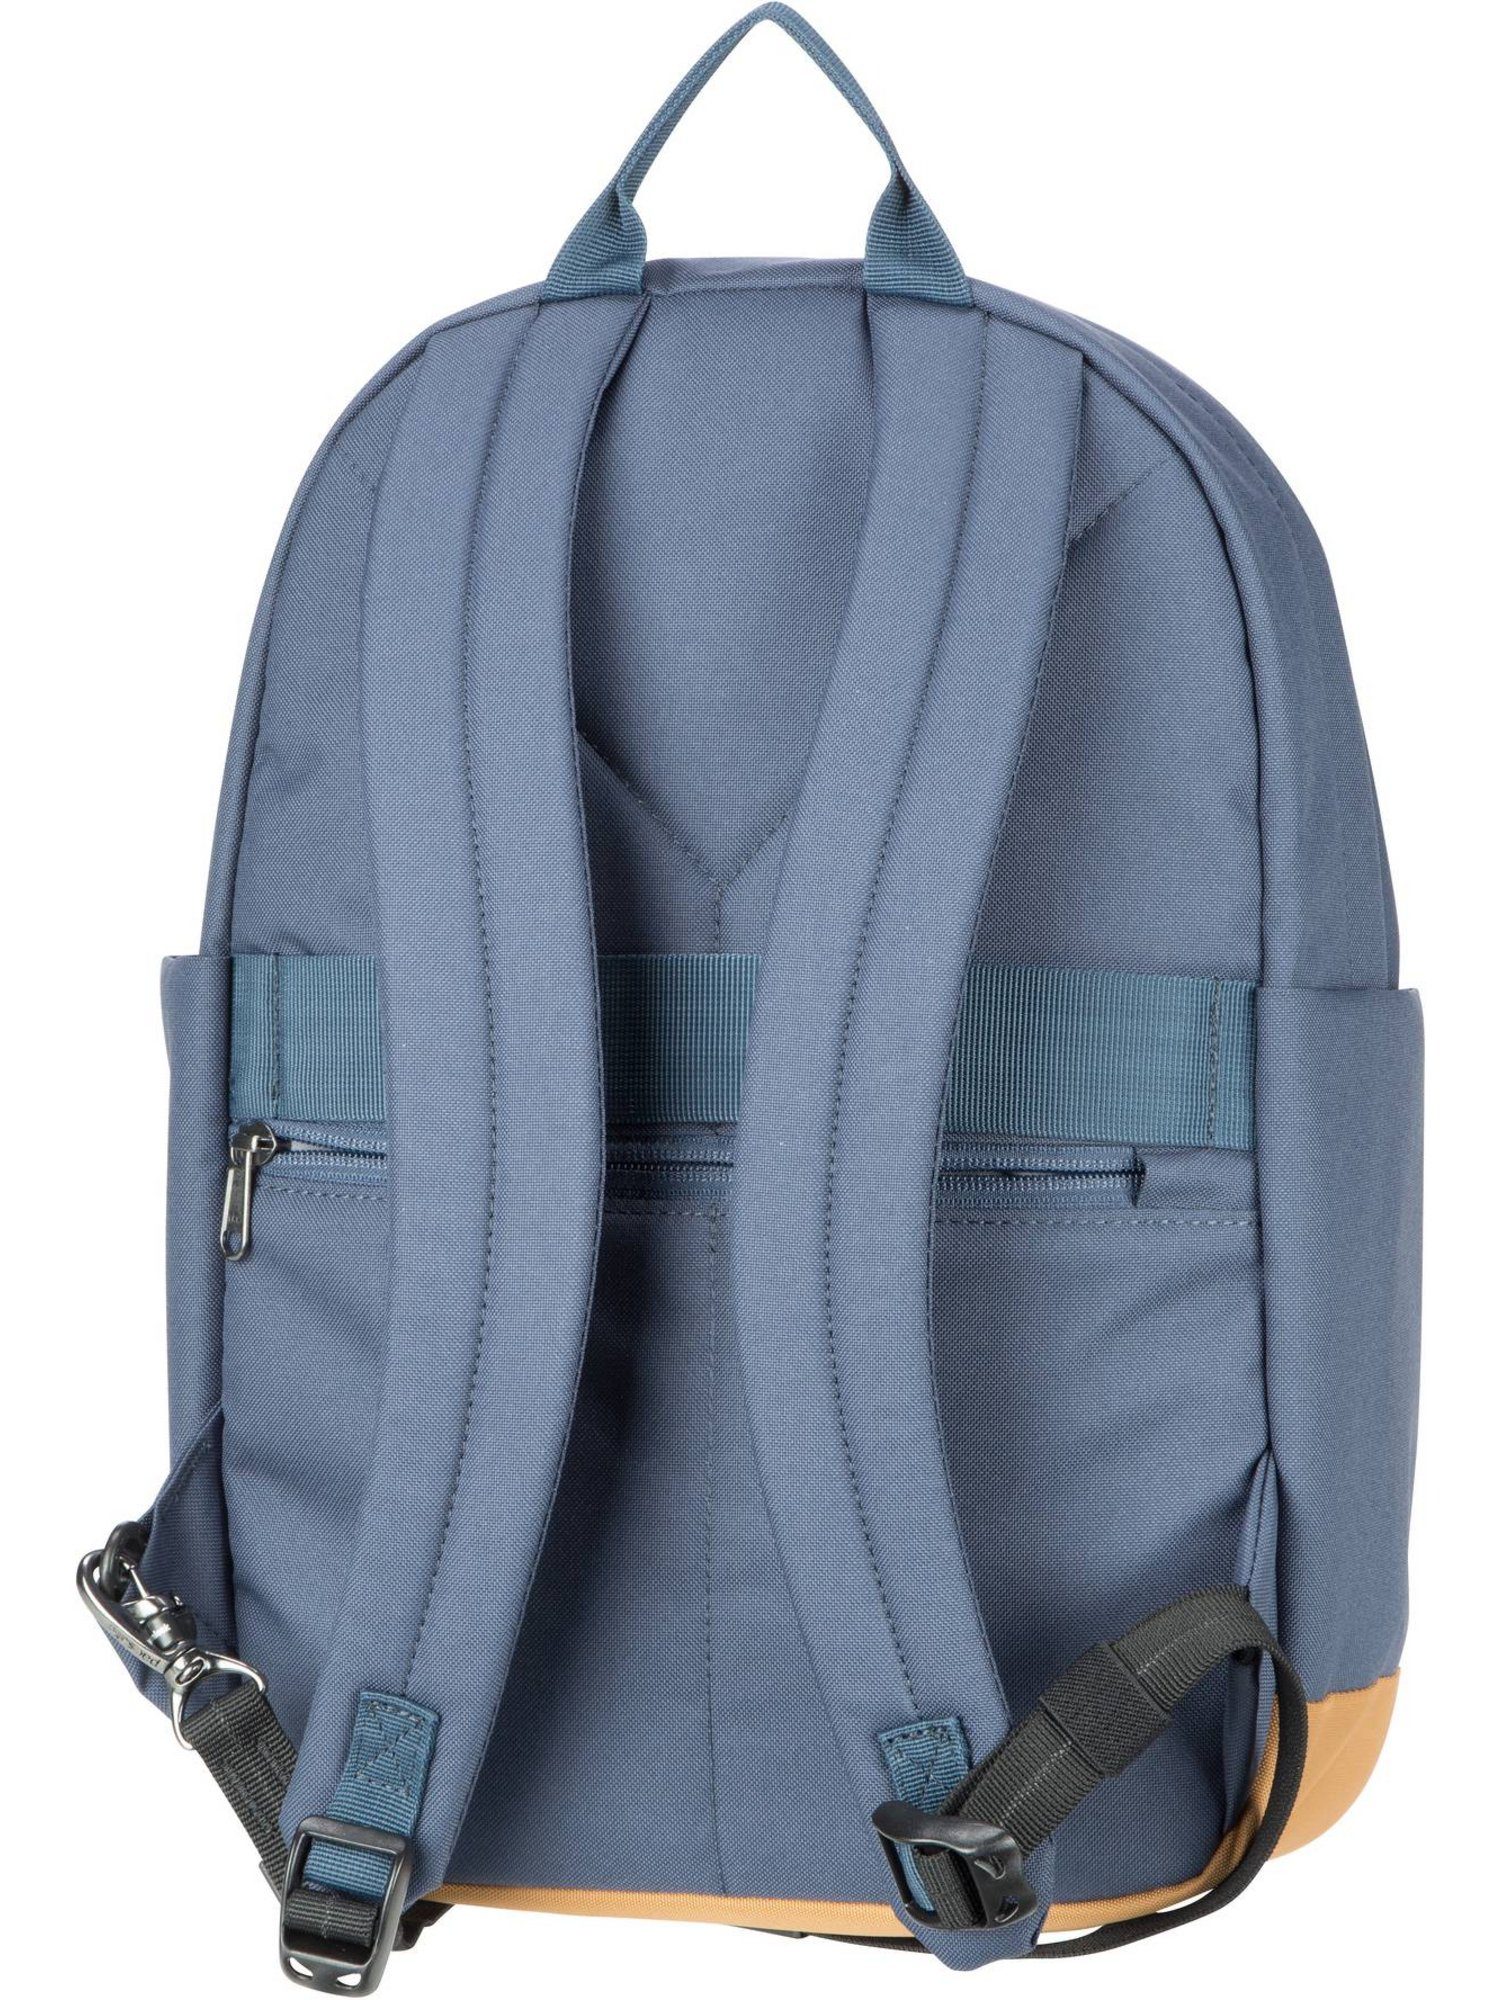 15L GO Blue Backpack Coastal Rucksack Pacsafe